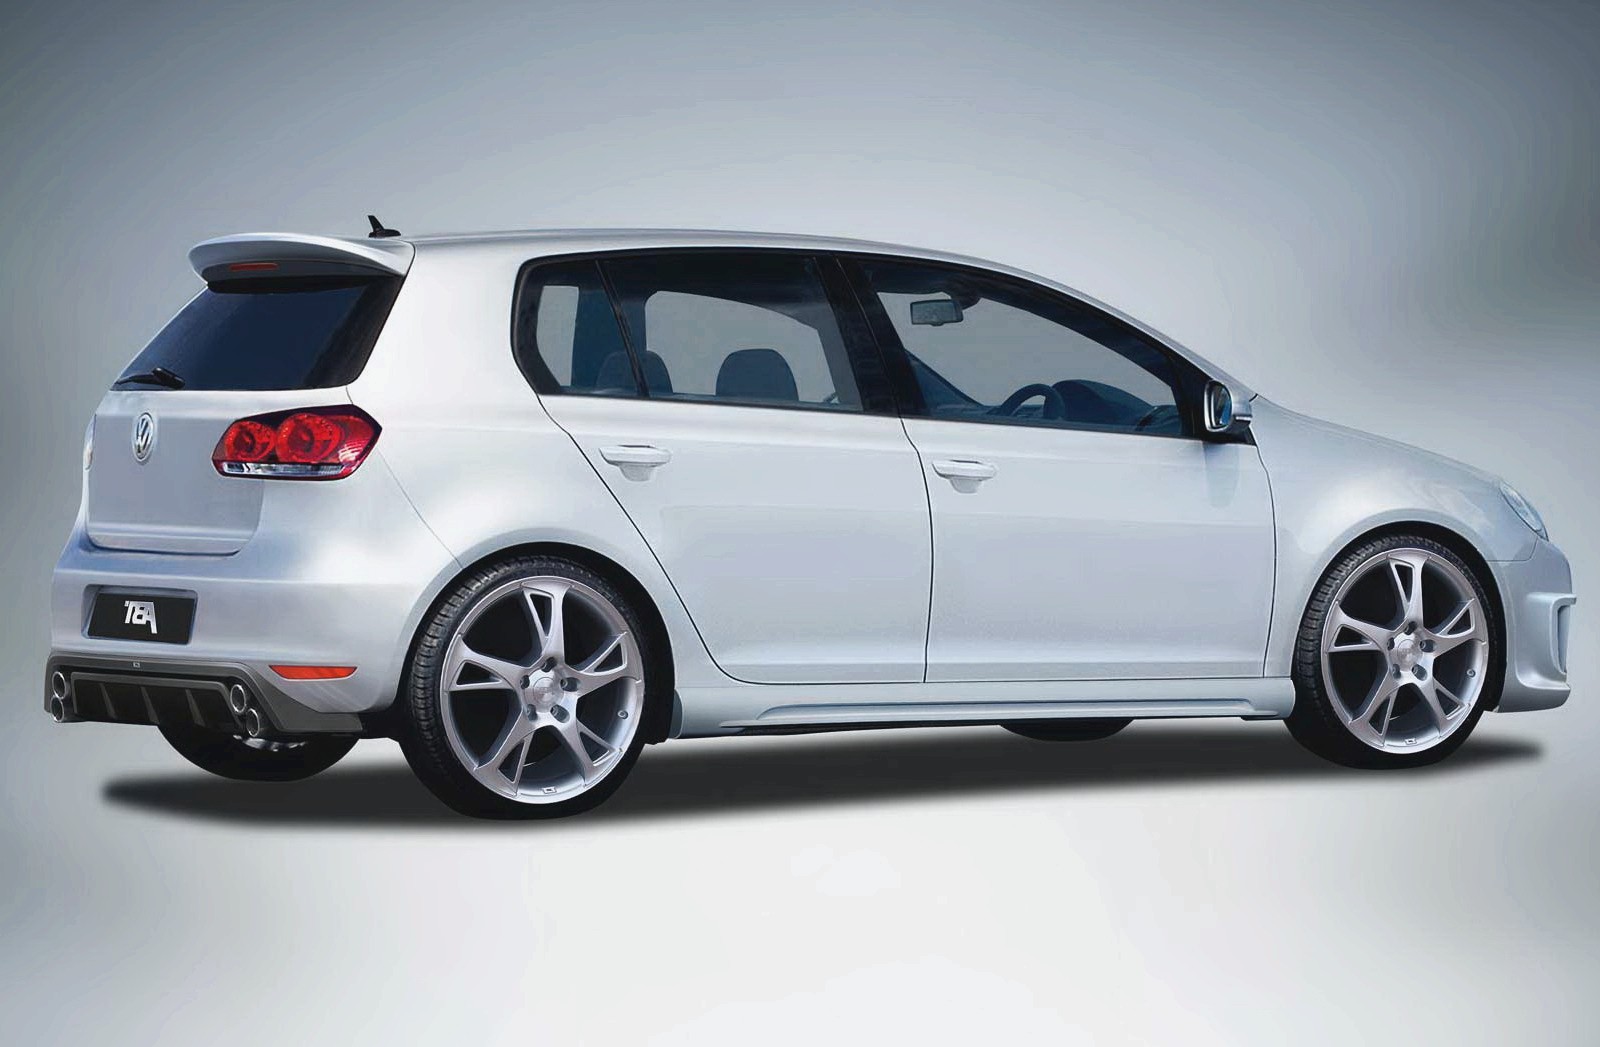 Volkswagen Golf 6, обзор автомобилей, новинки автомобилестроения, диагностика автомобилей, эксплуатация автомобилей, ремонт автомобилей, OBD